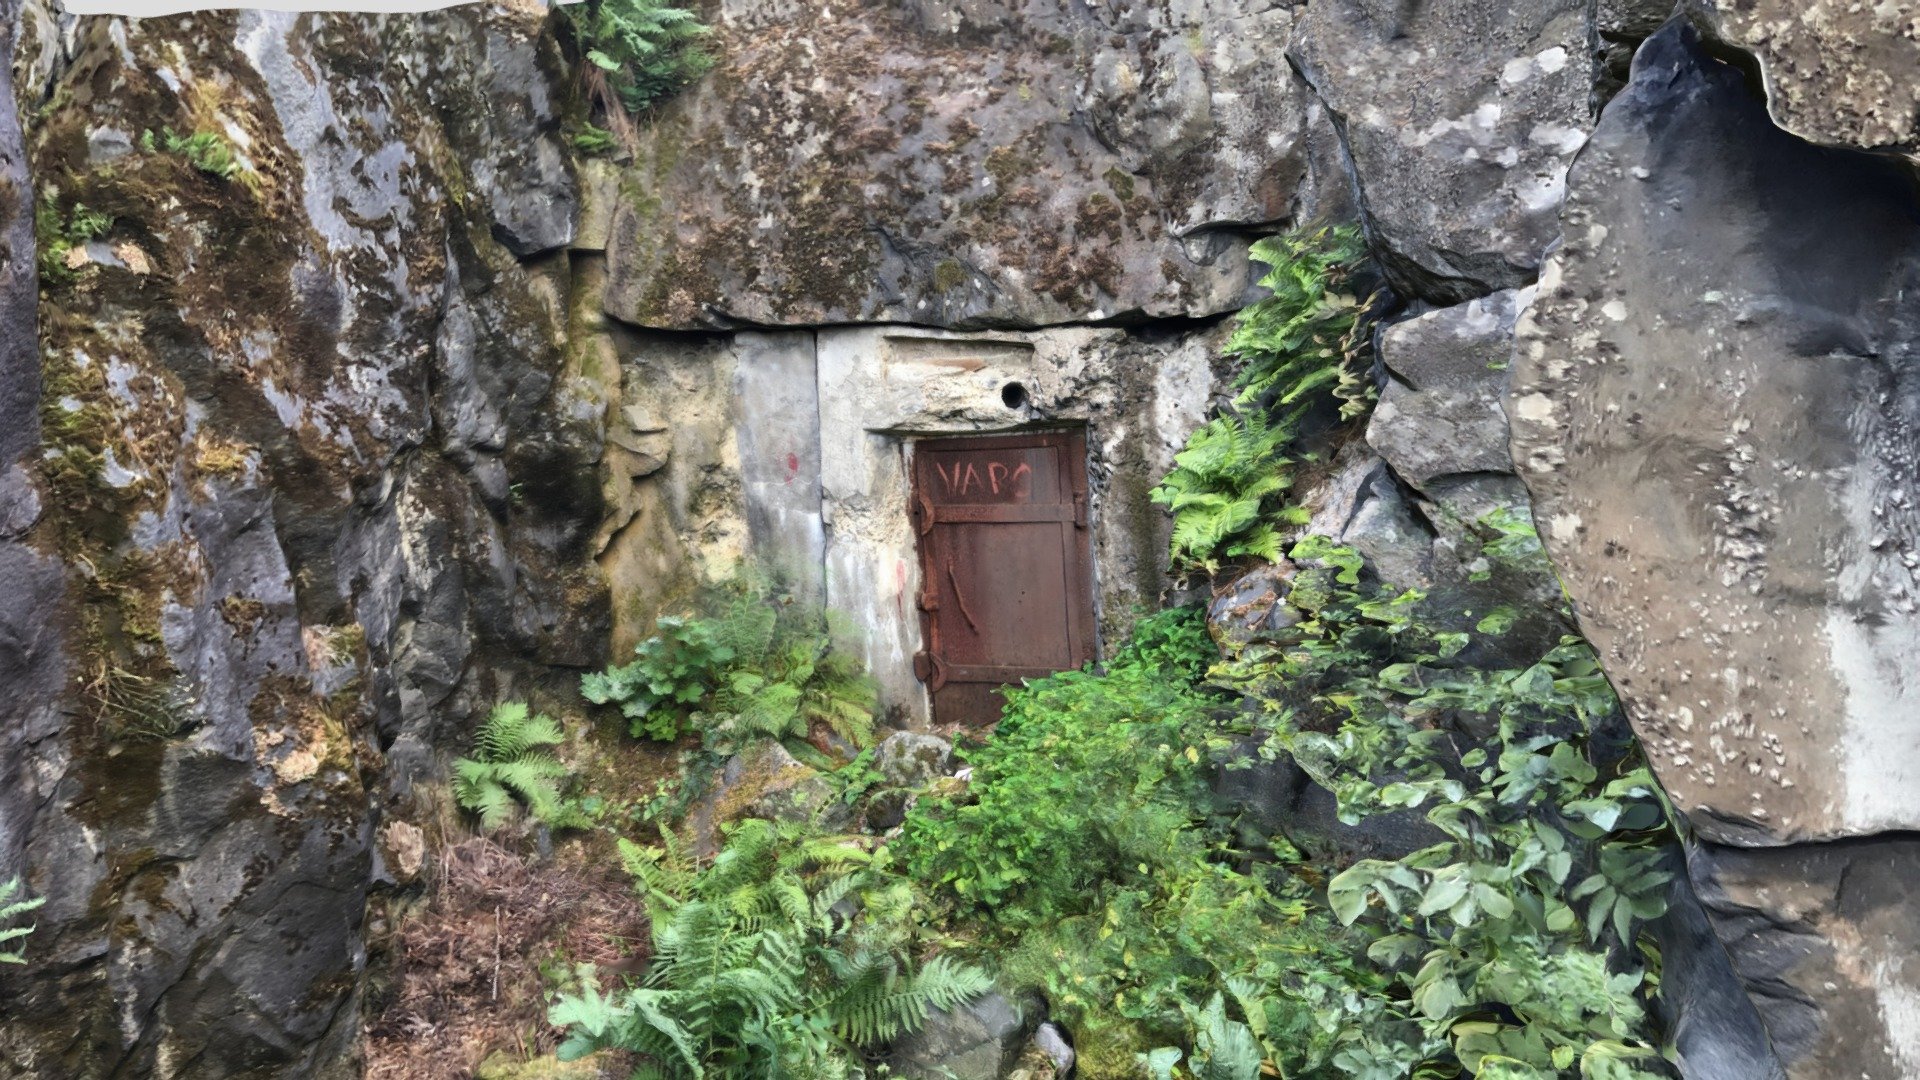 Cave entrance in WW1 base, Helsinki, Finland